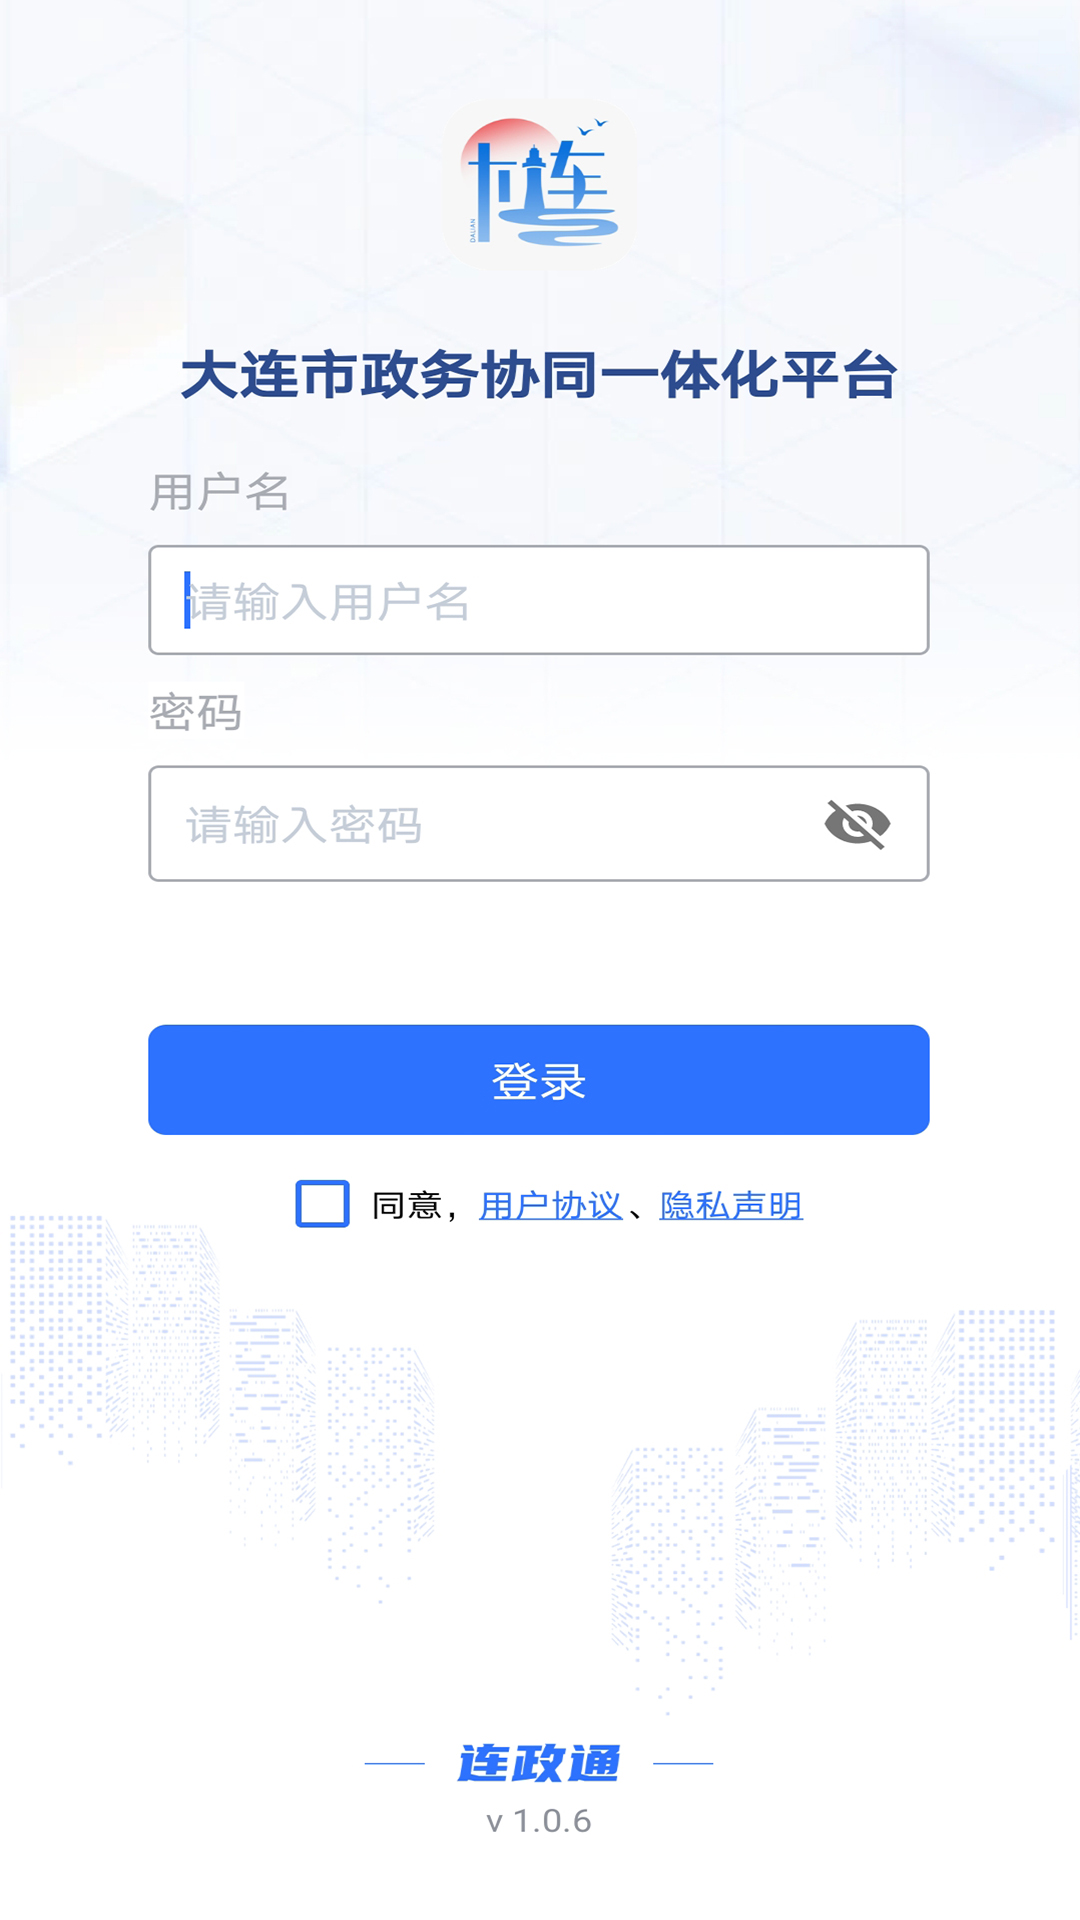 连政通昆明app开发者平台